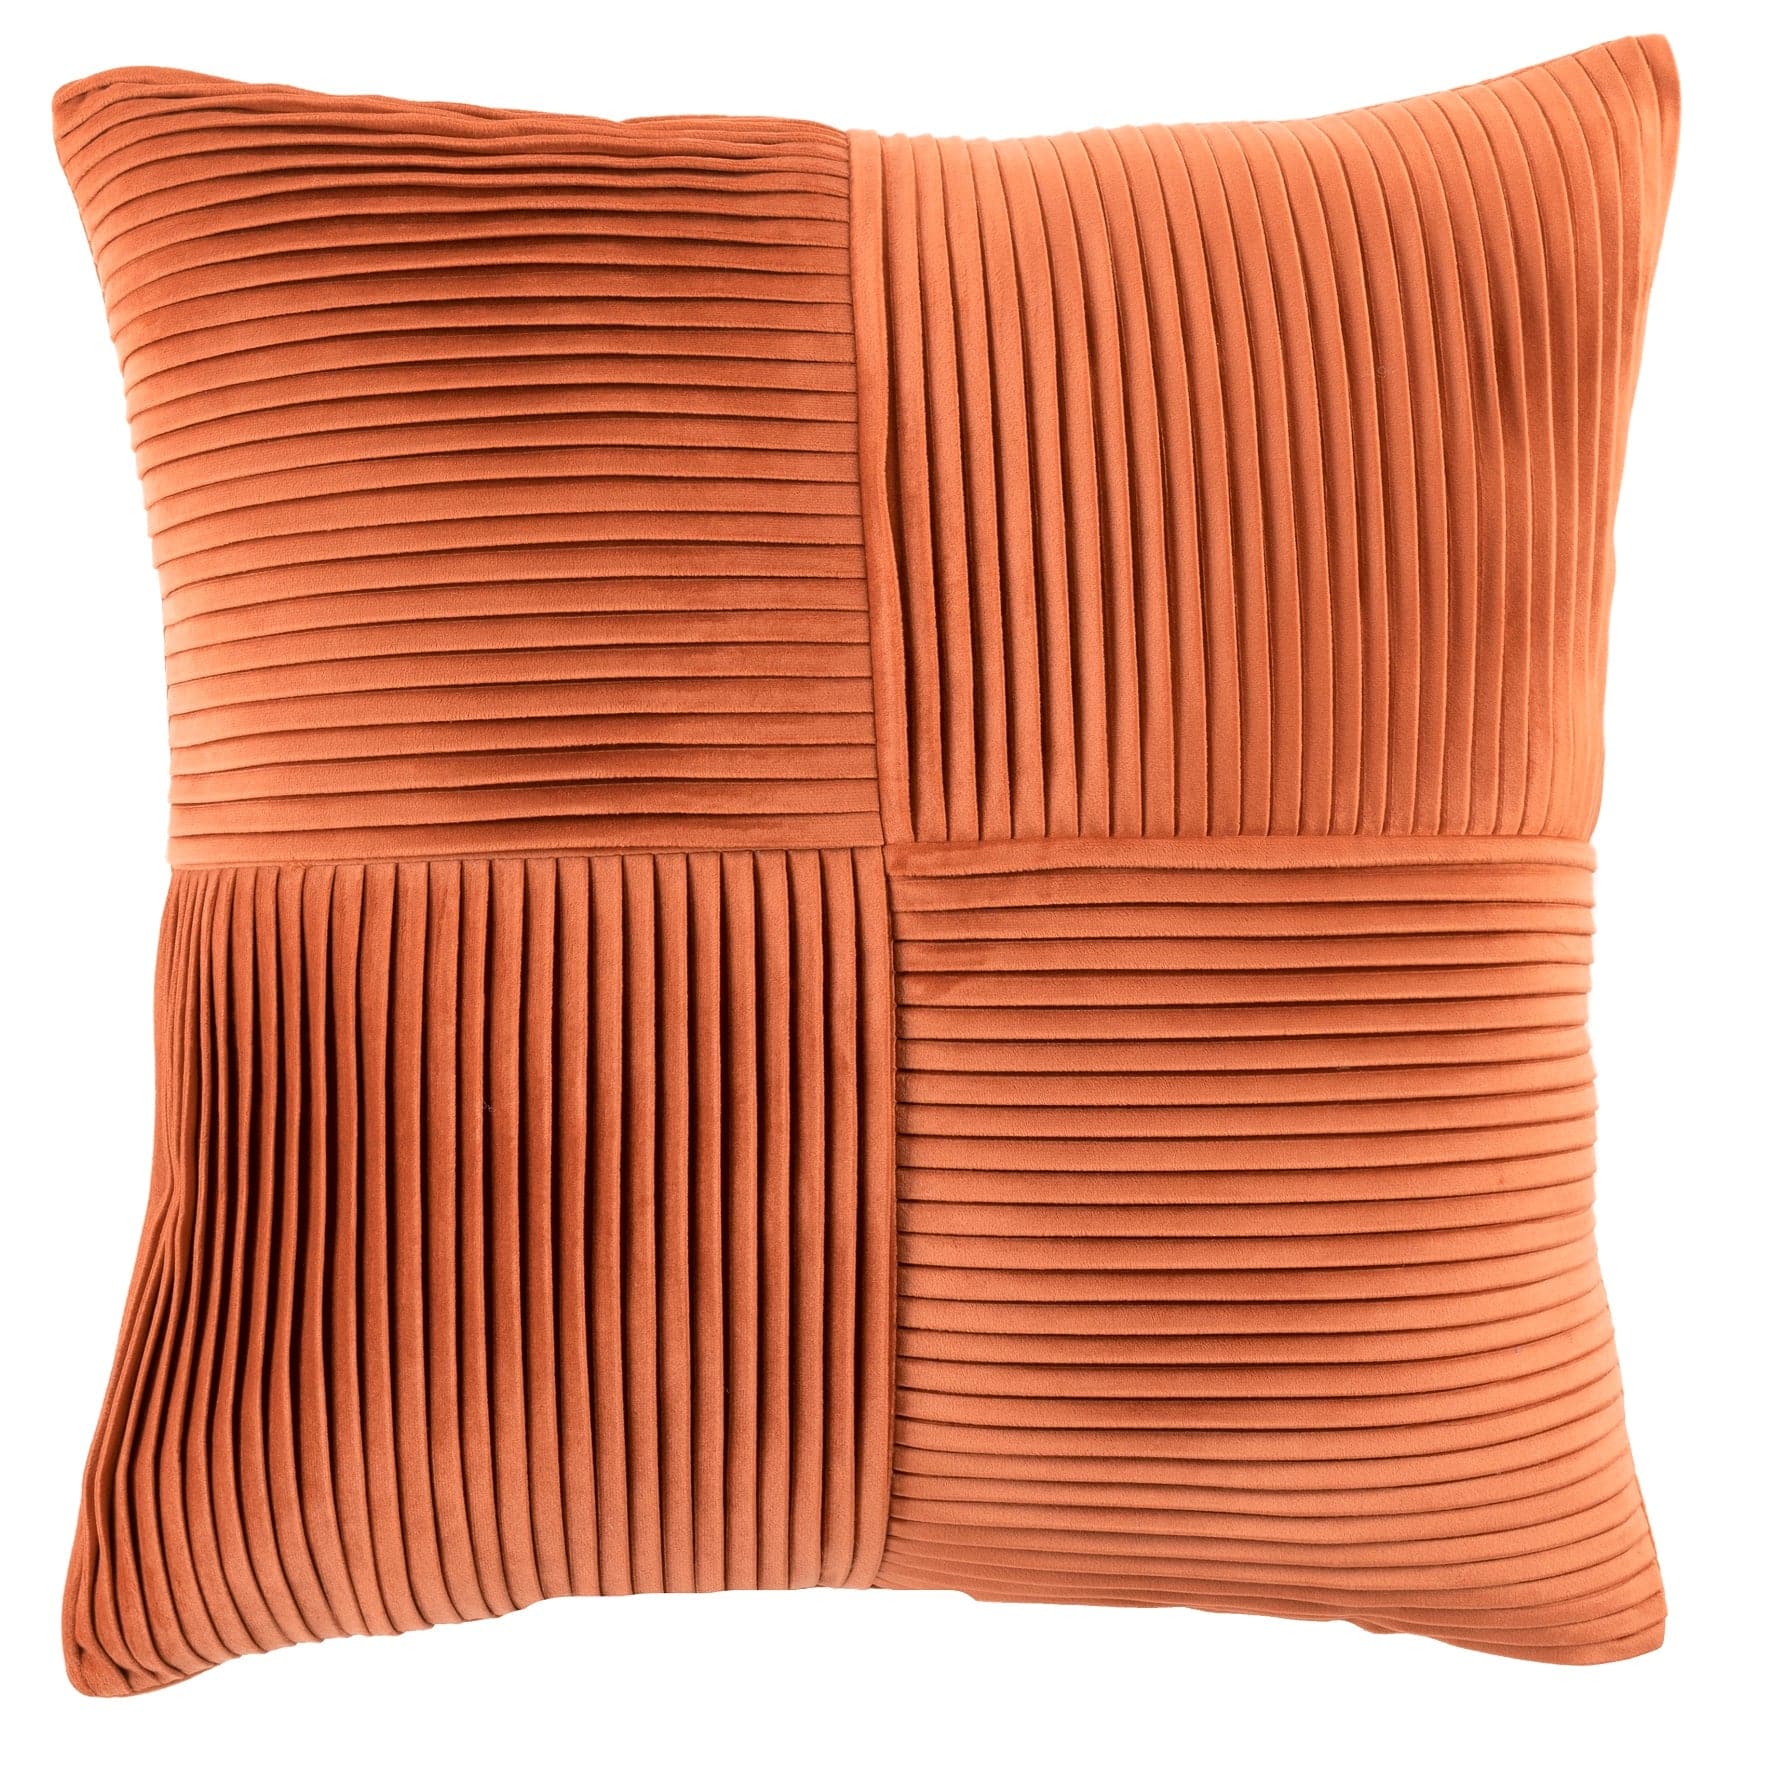 Sheldon Pleat Decorative Pillow, Lush Decor